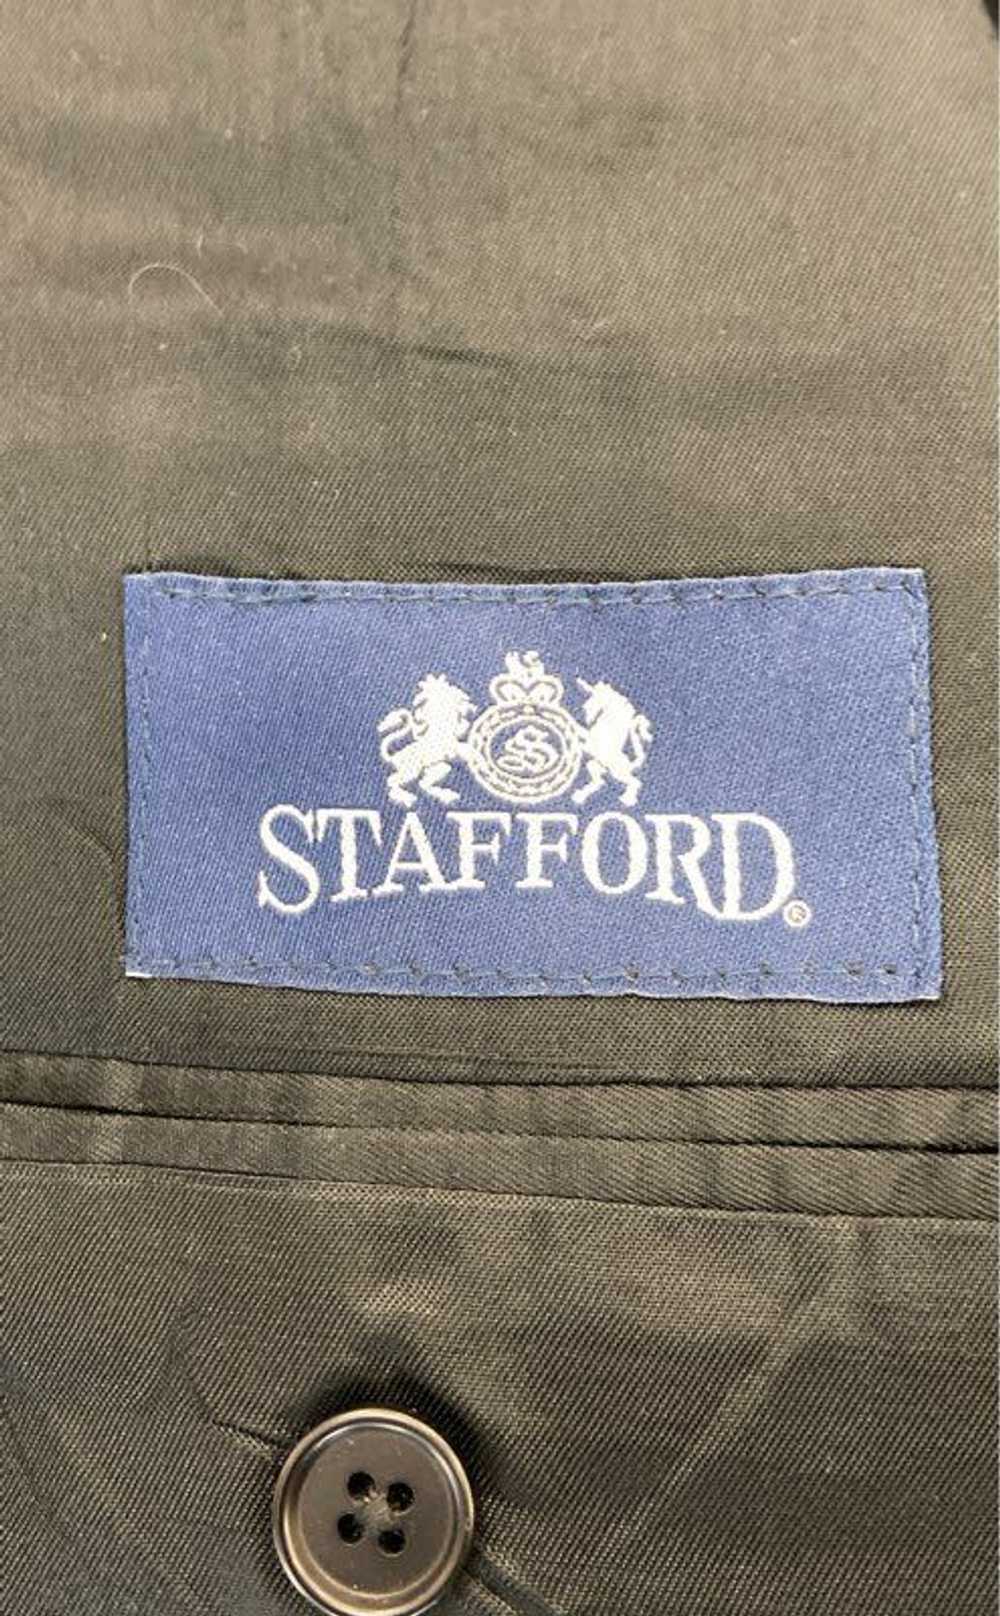 Stafford Black Jacket - Size Large - image 4